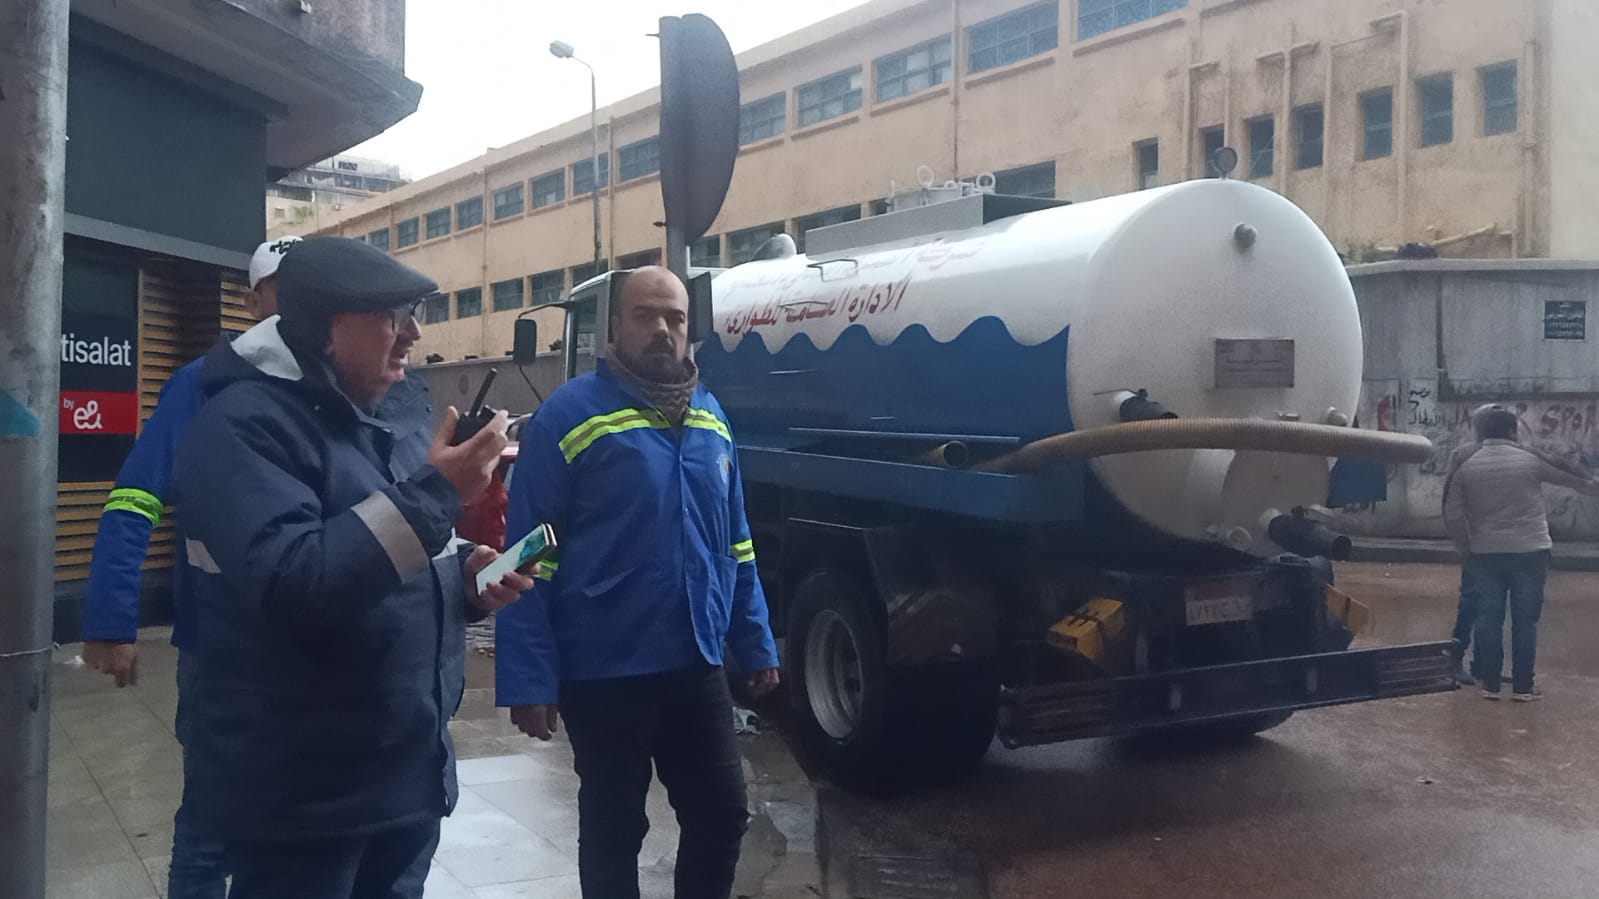 رئيس صرف الإسكندرية يتفقد التعامل مع مياه الأمطار